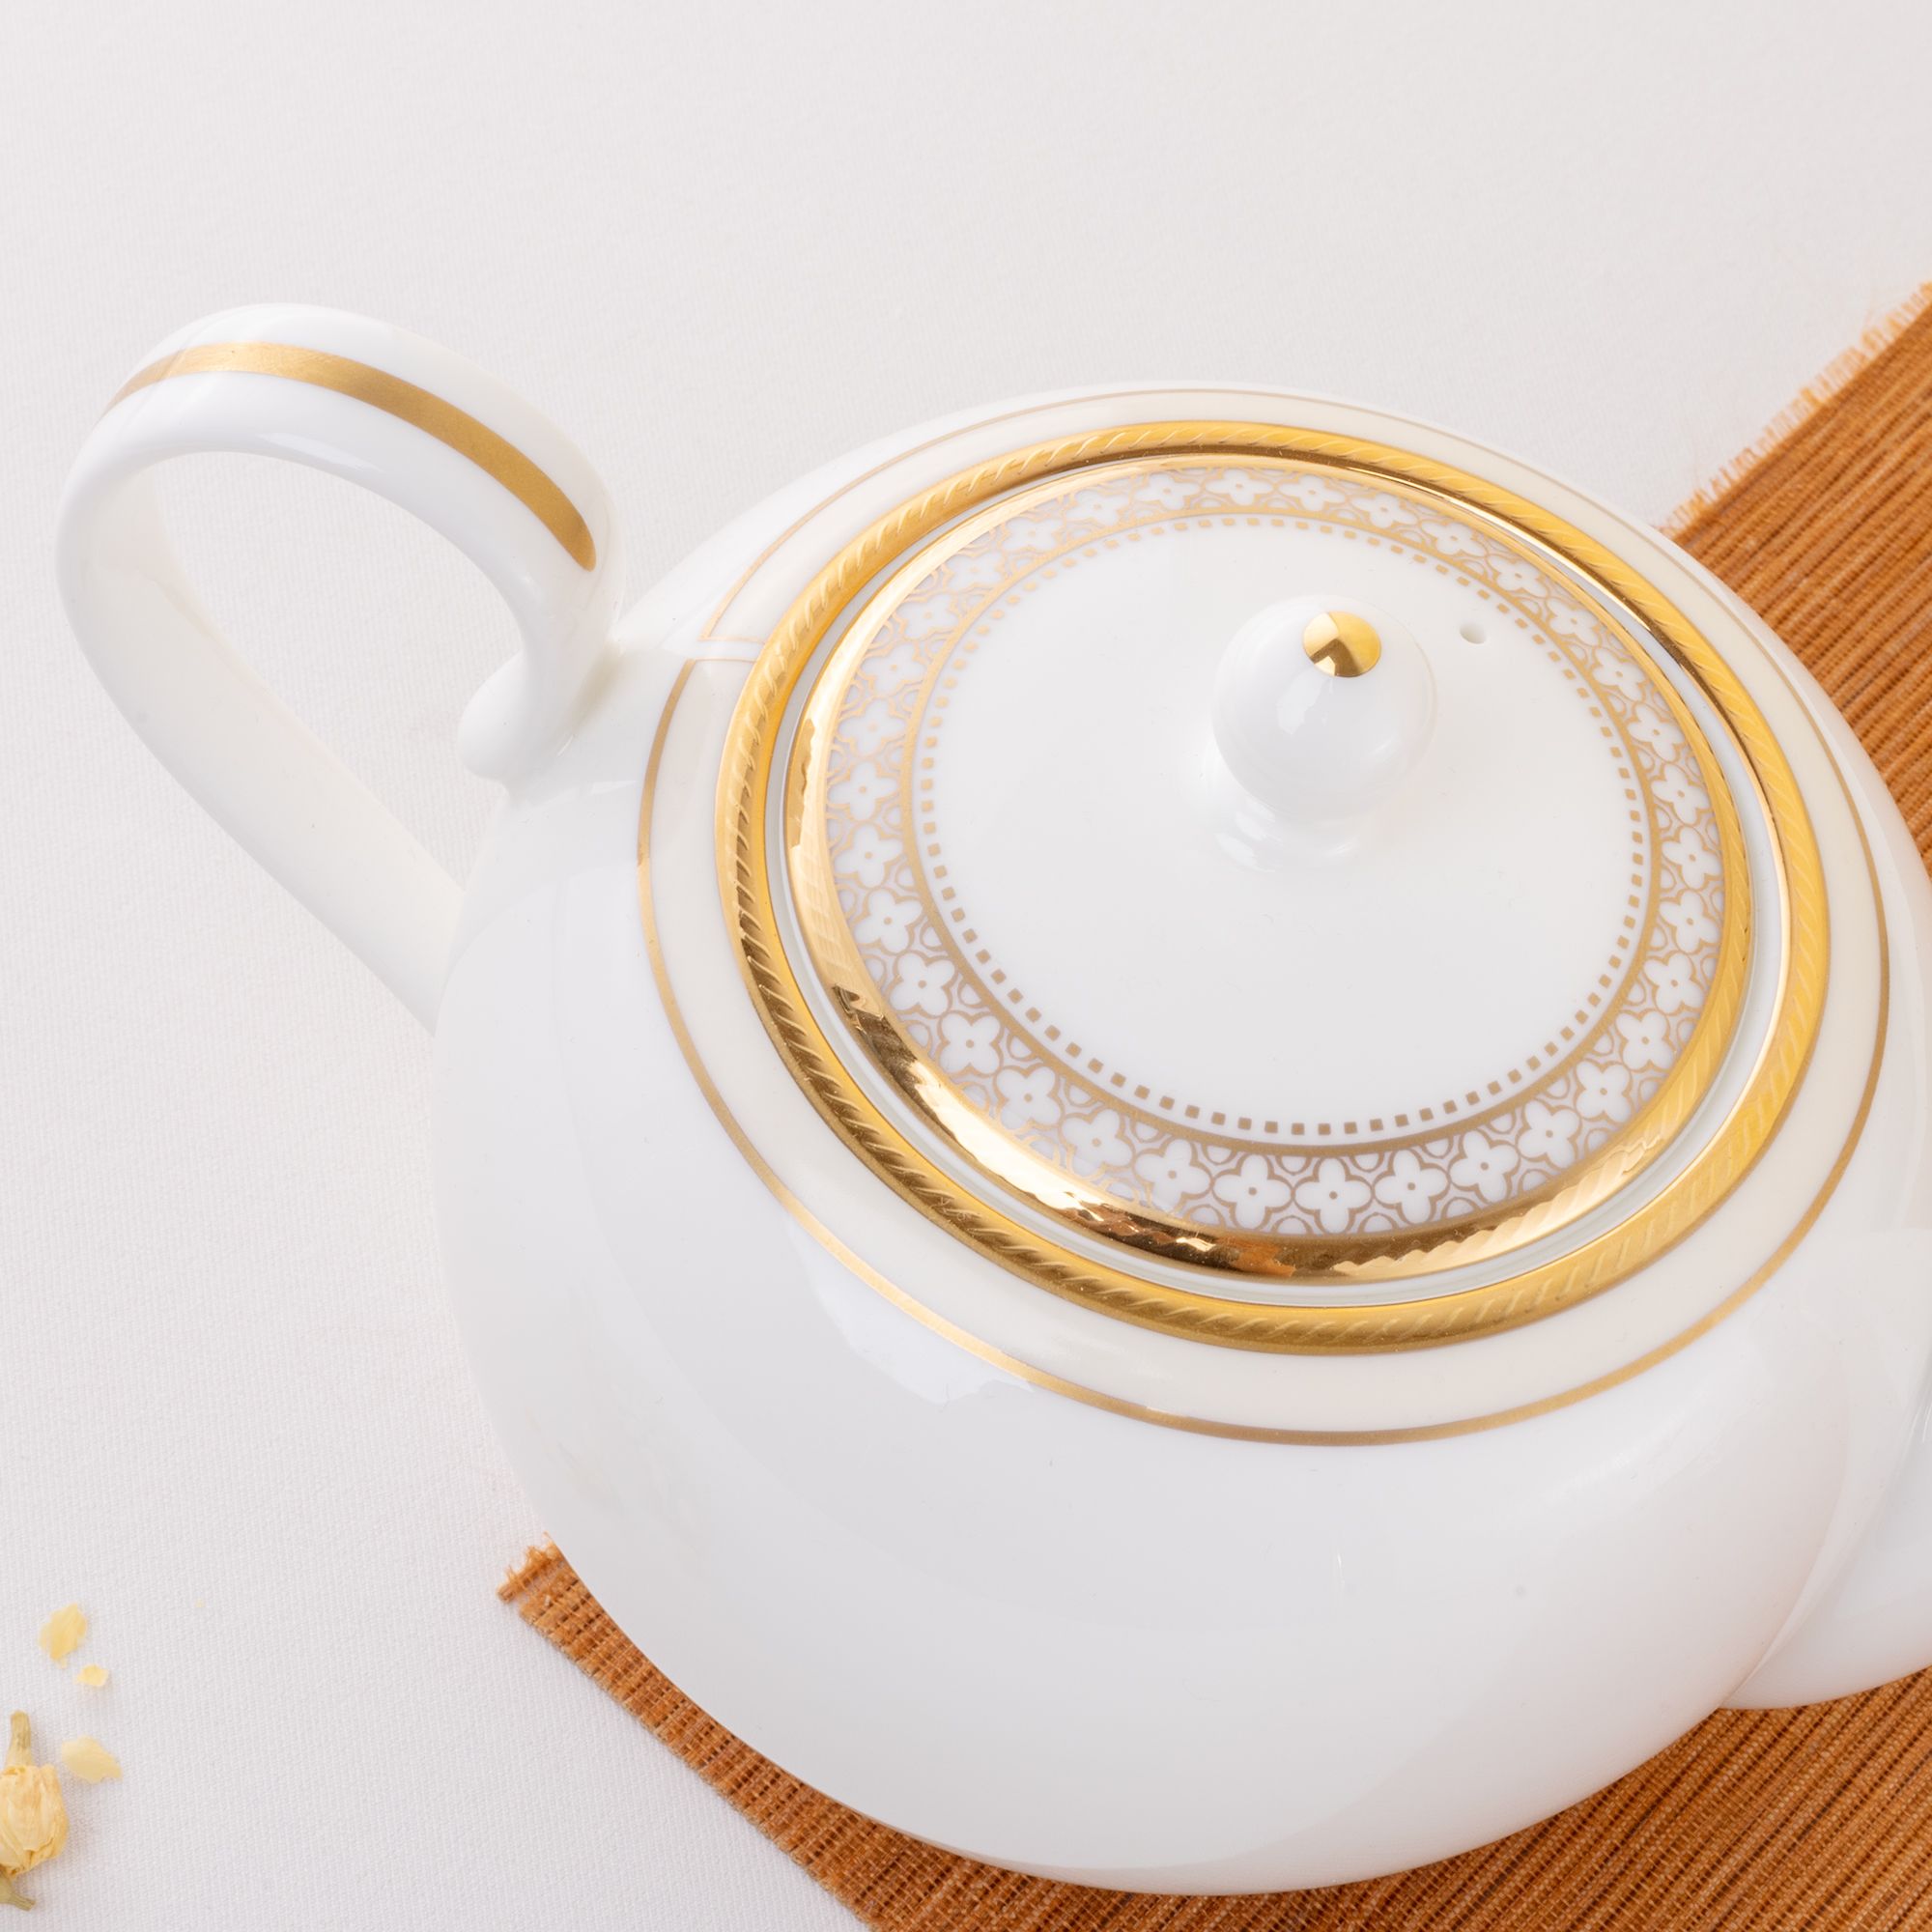  Bộ ấm chén uống trà 13 món (ấm 650ml, tách 90ml) sứ xương cao cấp | Trefolio Gold 4945L-T014S 